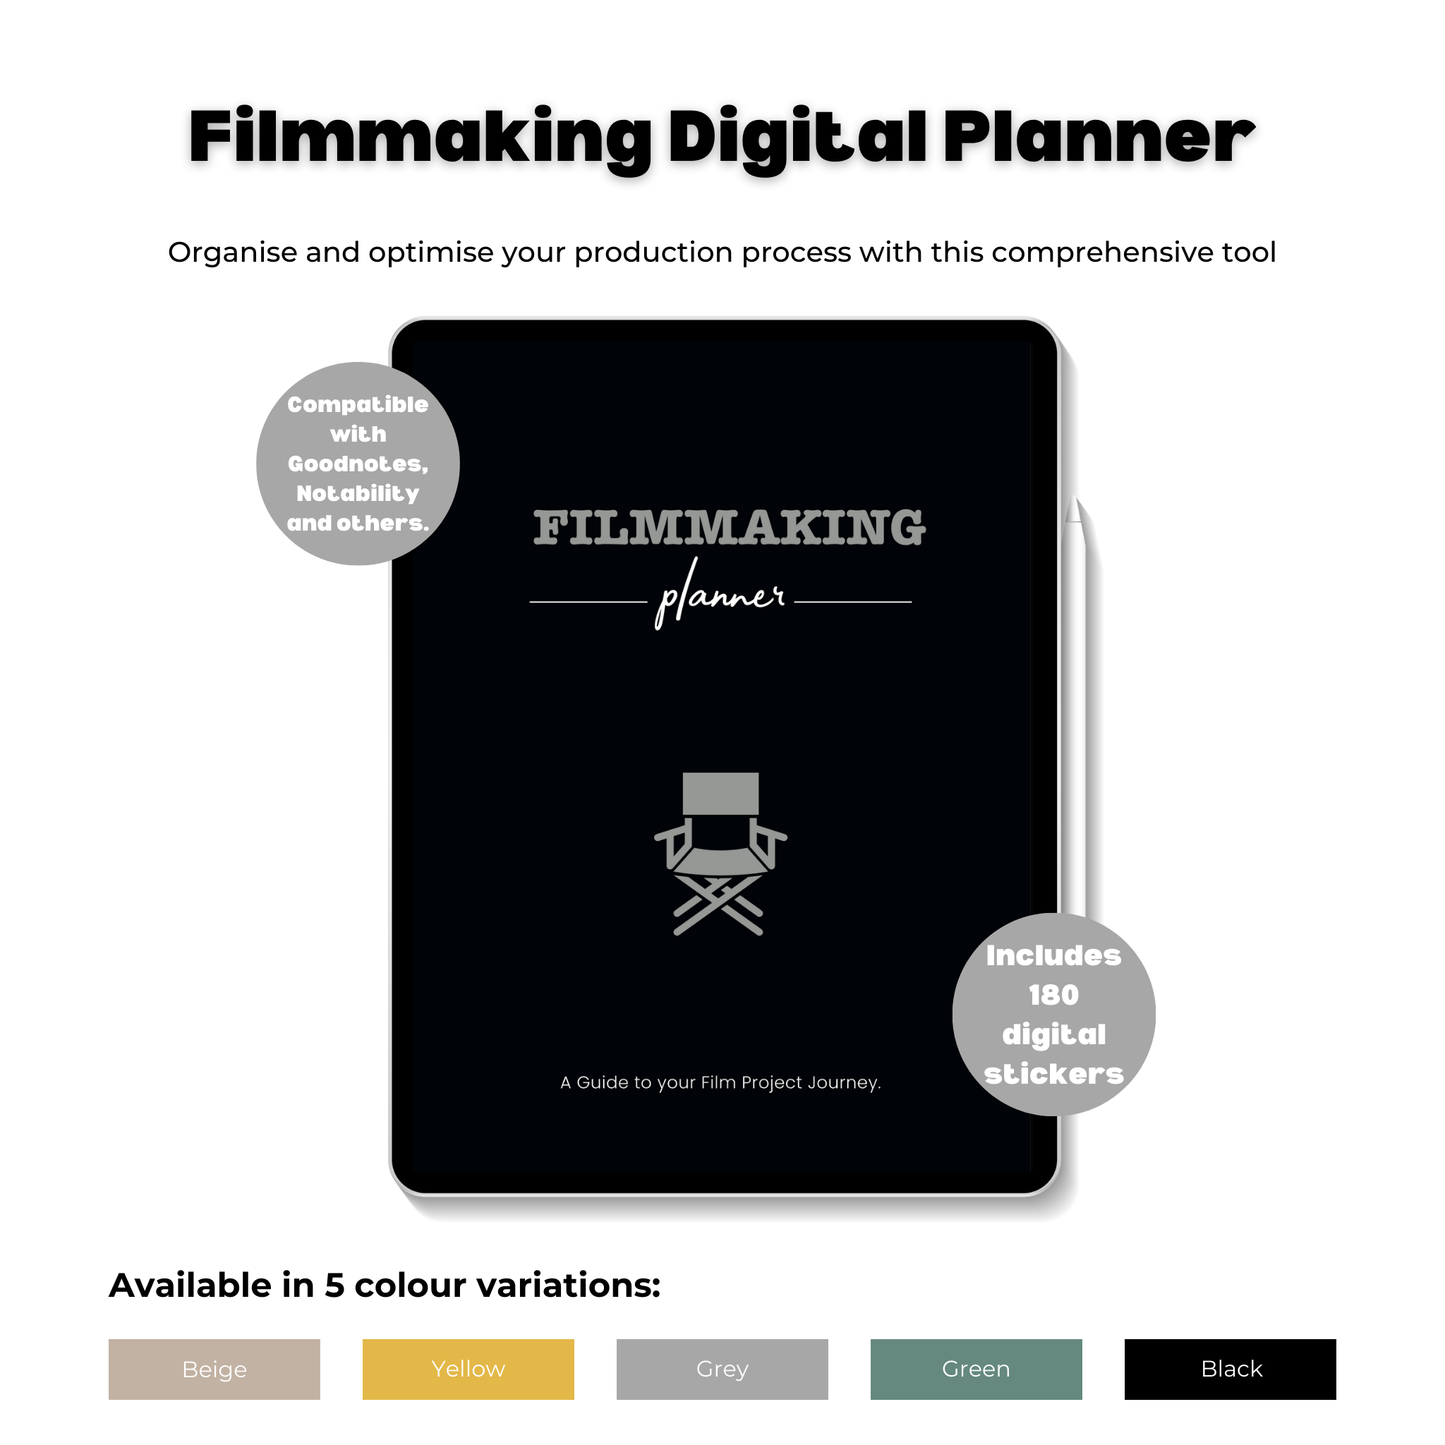 Filmmaking Digital Planner image showing grey planner variation.